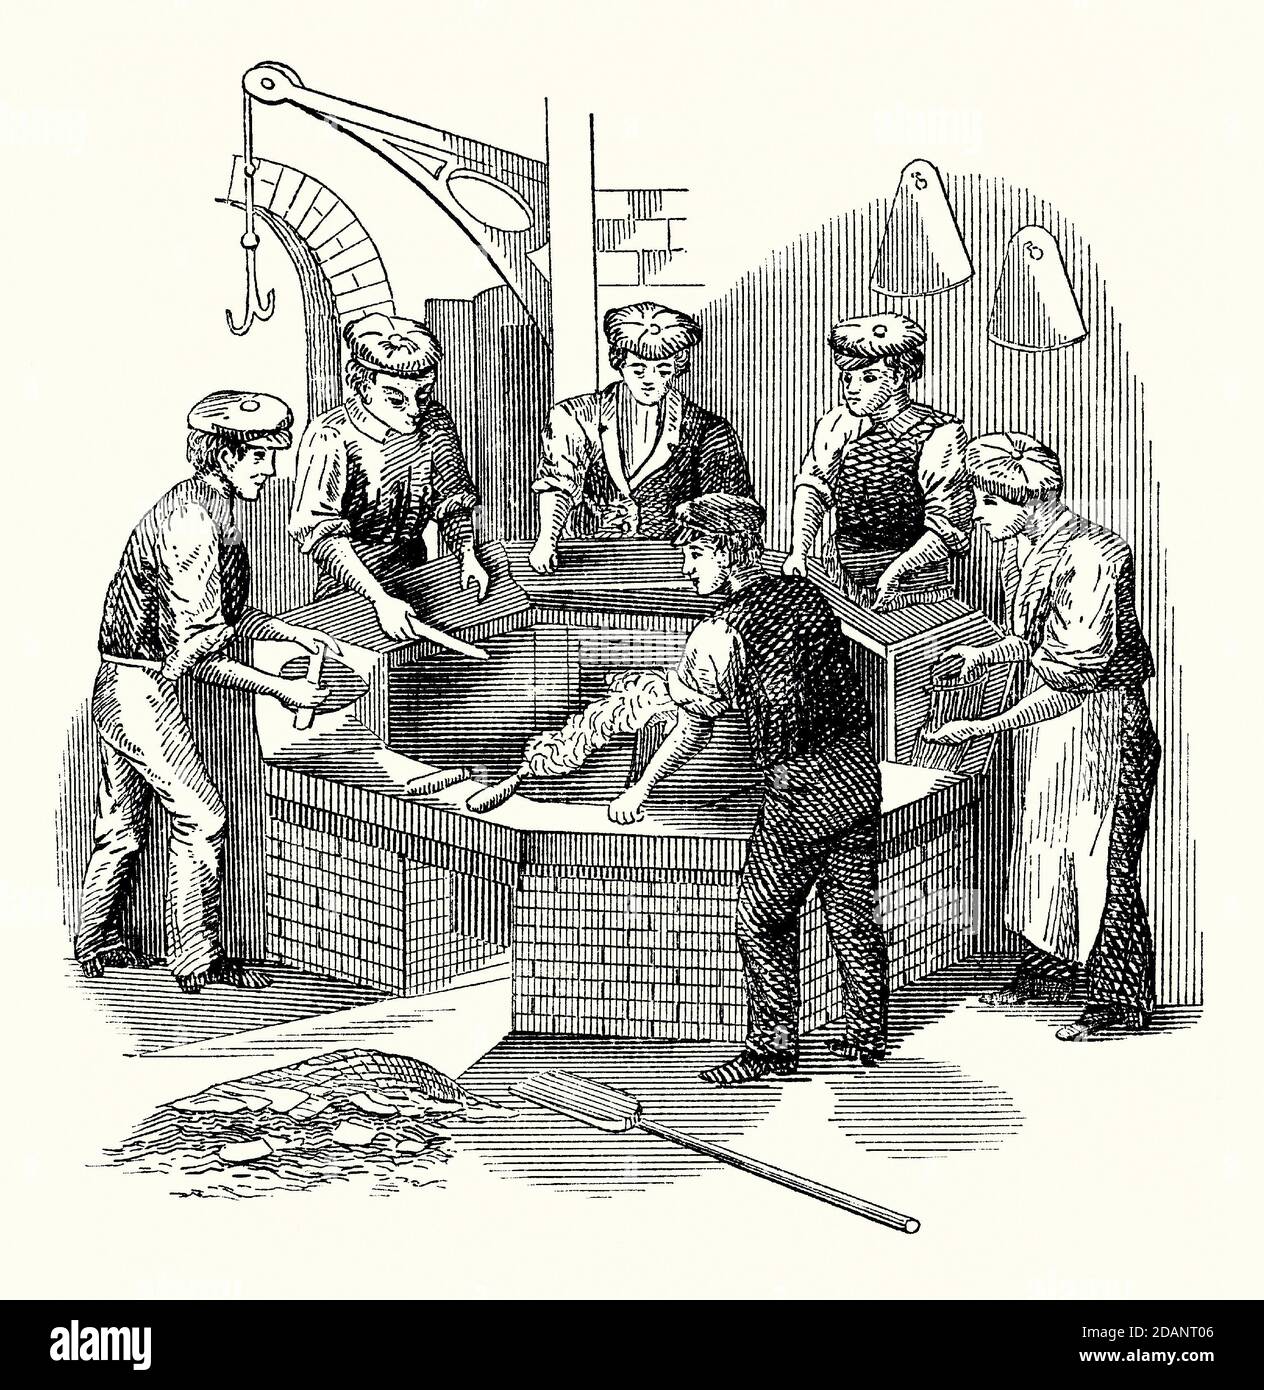 Eine alte Gravur, die Männer zeigt, die an einer Batterie eines Hatmaker arbeiten, die bei der Herstellung von Filzhüten verwendet wird. Es ist aus einem viktorianischen Maschinenbaubuch der 1880er Jahre. Die Batterie ist ein Kessel oder Wasserkocher mit heißem Wasser, plus eine kleine Menge Schwefelsäure. Die Säure hilft dem Fell, sich leichter ‘zu verfilzen’, wenn es an den konischen Hutkörpern haftet. Ein ‘Nickerchen’ ist die erhöhte (verschwommene) Oberfläche auf Tüchern wie Samt oder Moleskin, oder die Oberfläche von Filz oder Biberpelz. Die Arbeiter unterstützen diesen Nickvorgang, indem sie mit ihren Holzwerkzeugen, den ‘Handschuhen’, reiben. Stockfoto